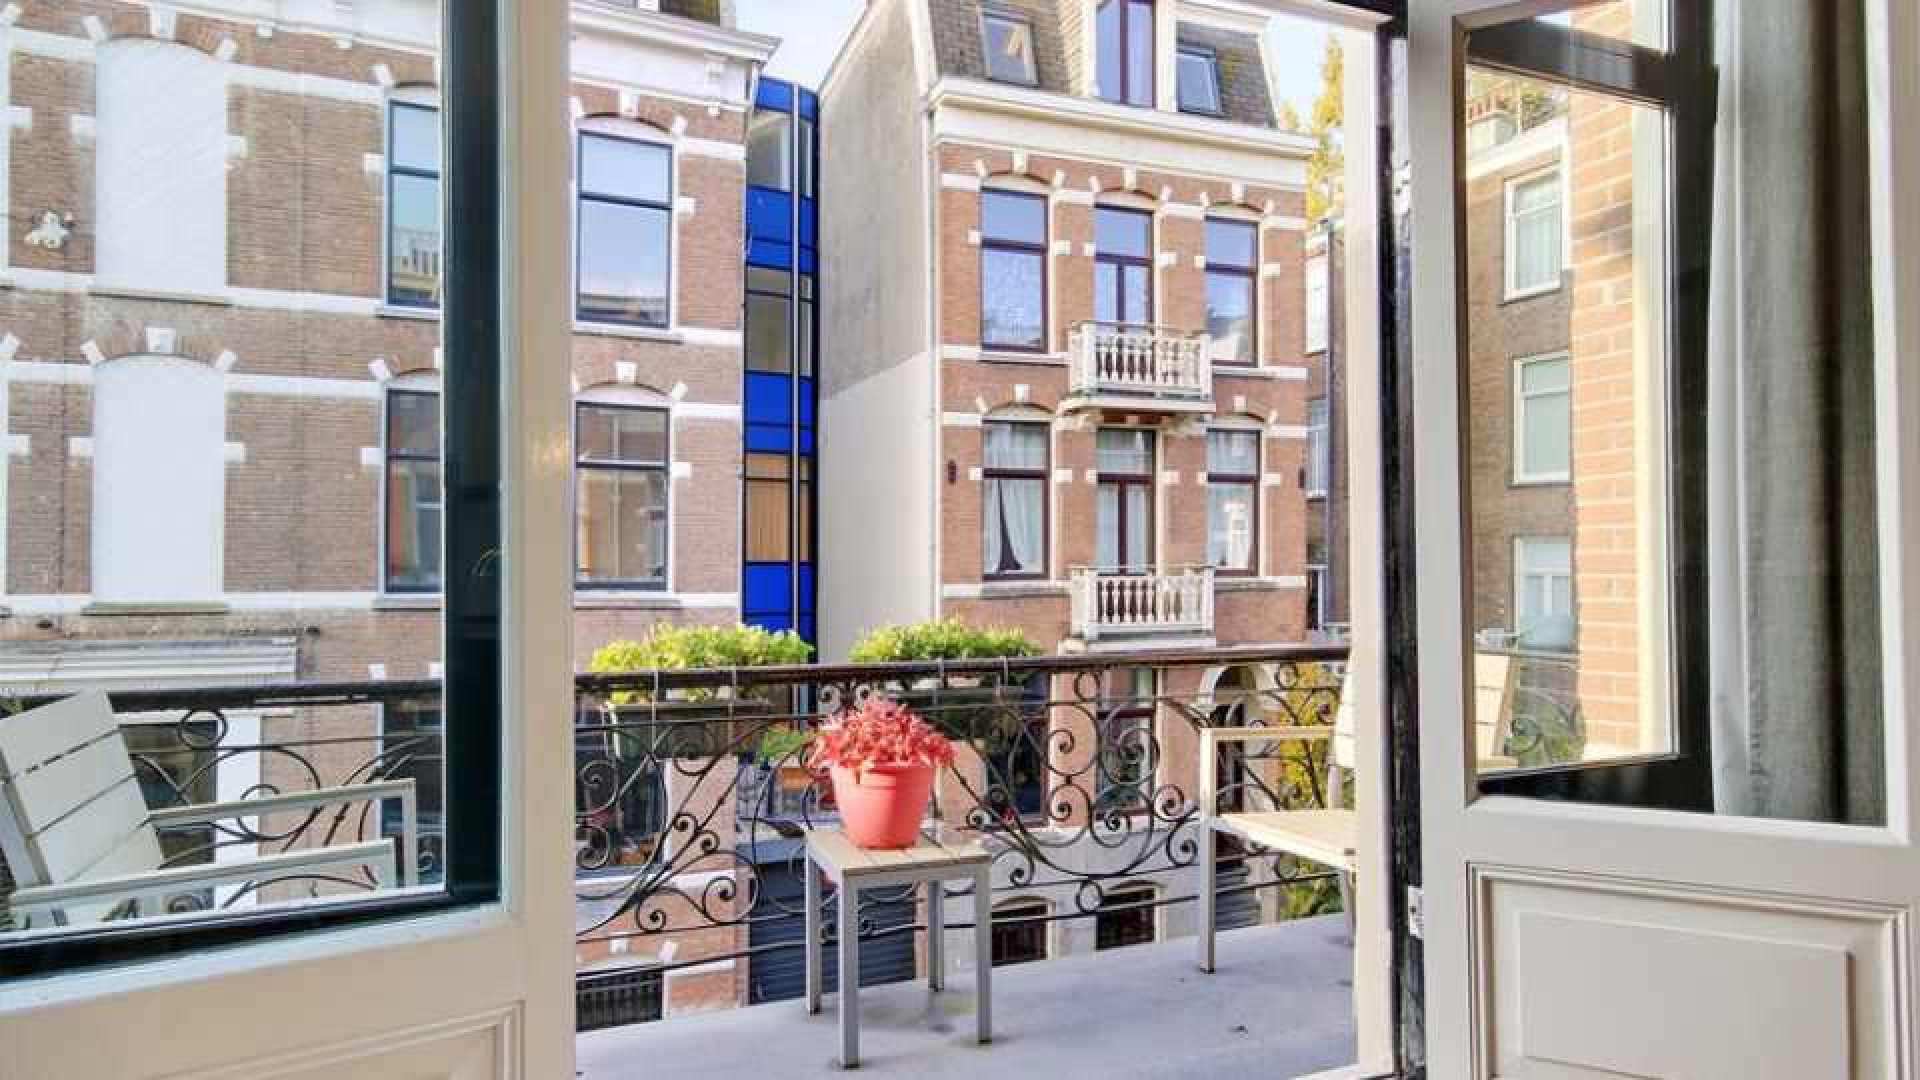 Leco van Zadelhoff koopt voor miljoen euro luxe appartement. Zie foto's 16